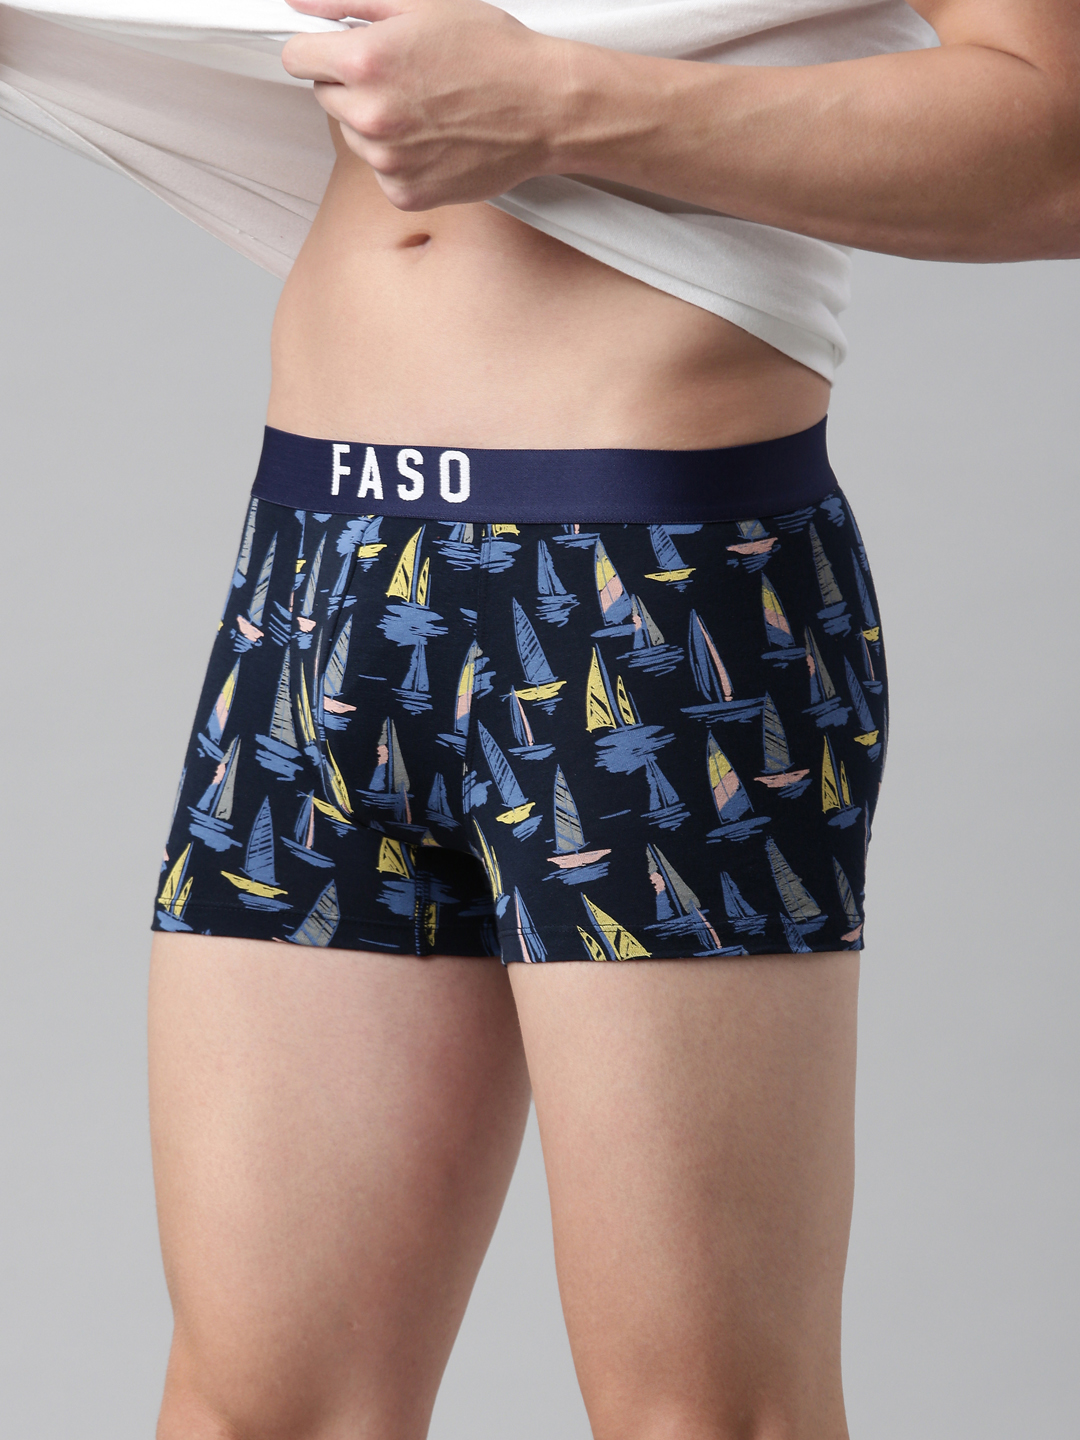 Buy FASO Trunks for Men  Trendy & Comfort Mens Trunk OnlineBuy